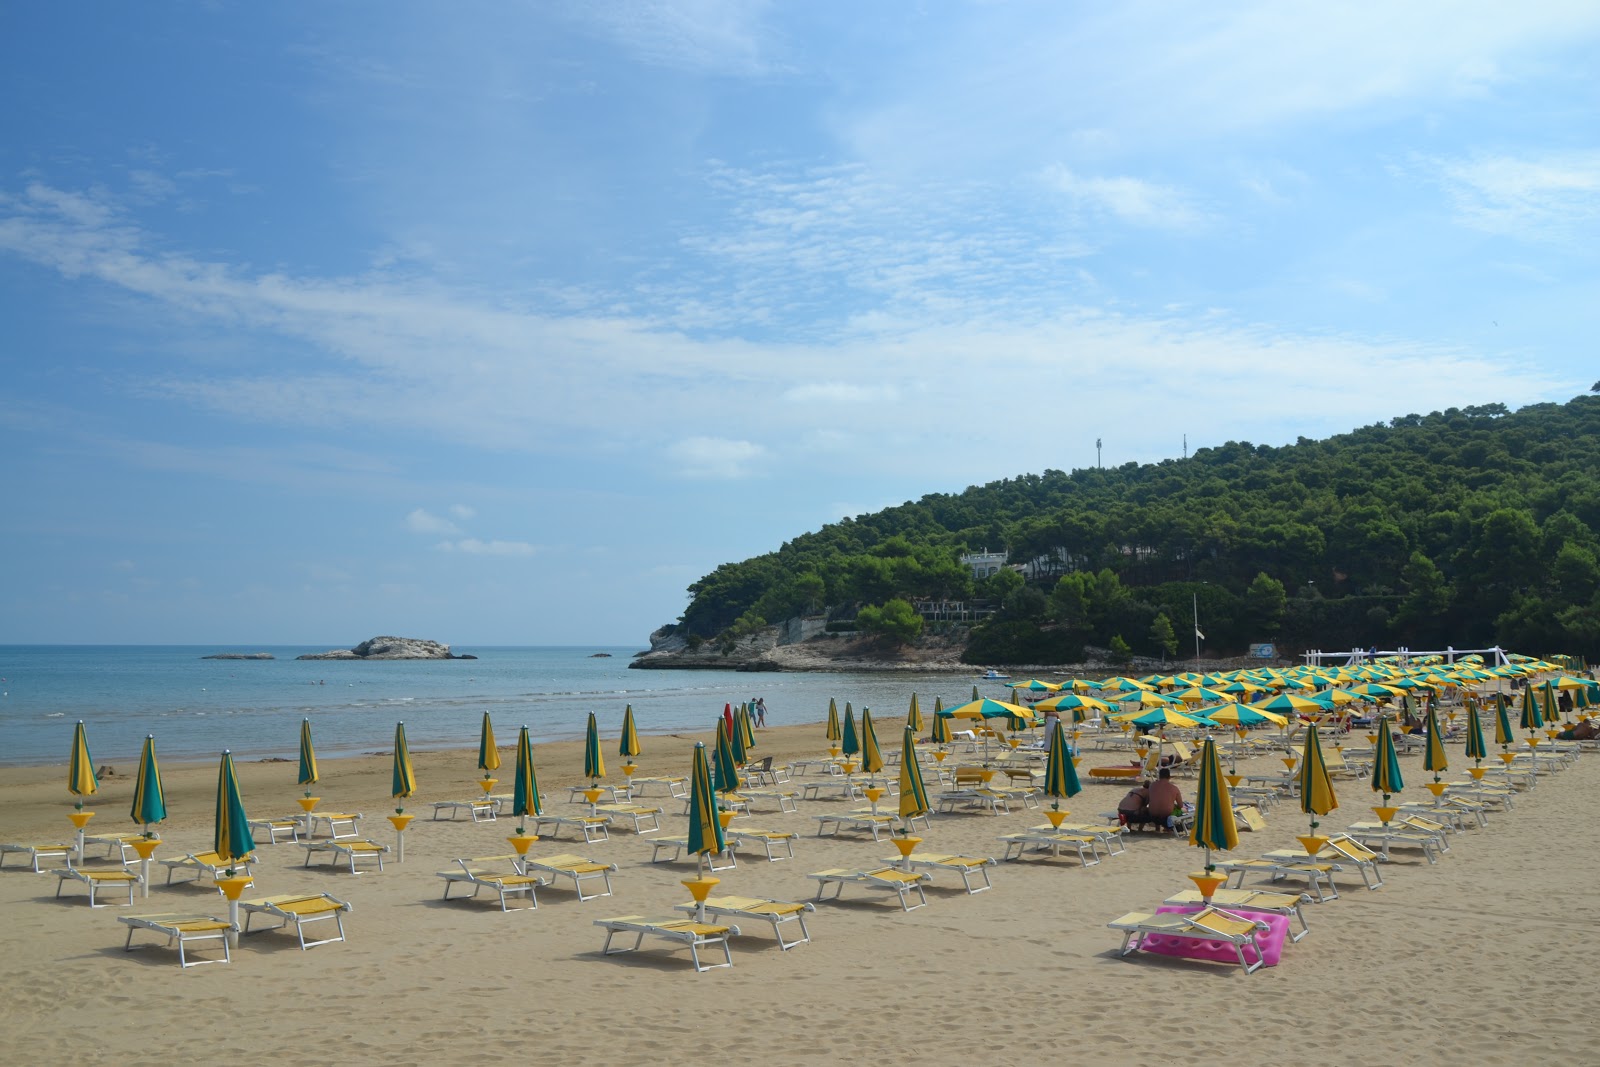 Spiaggia di Portonuovo'in fotoğrafı - Çocuklu aile gezginleri için önerilir